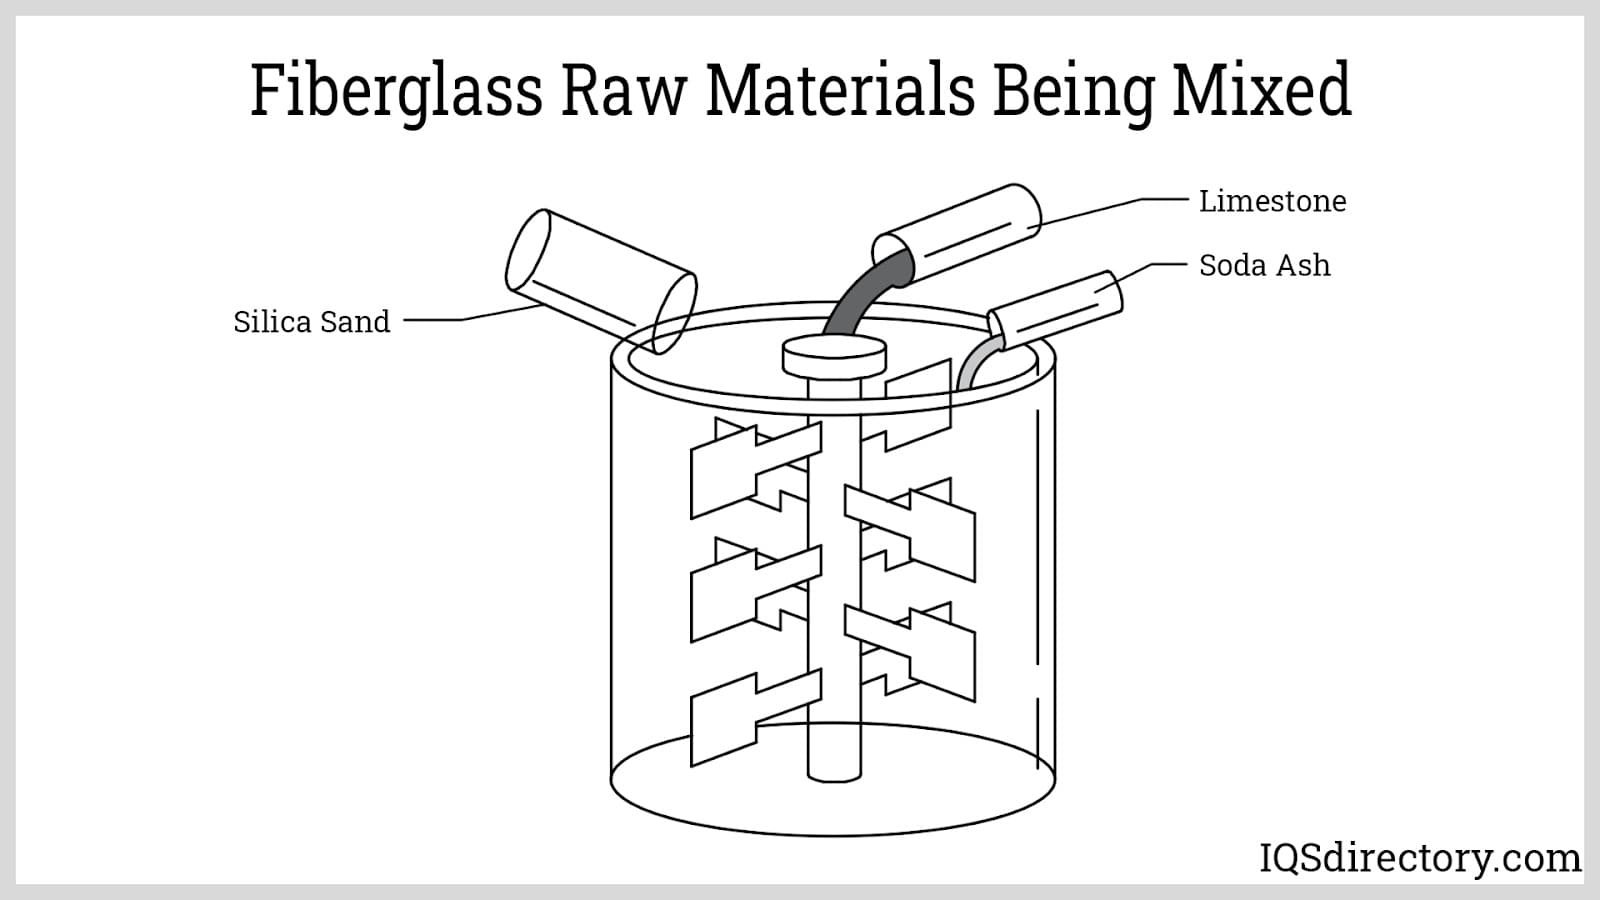 Fiberglass Raw Materials Being Mixed